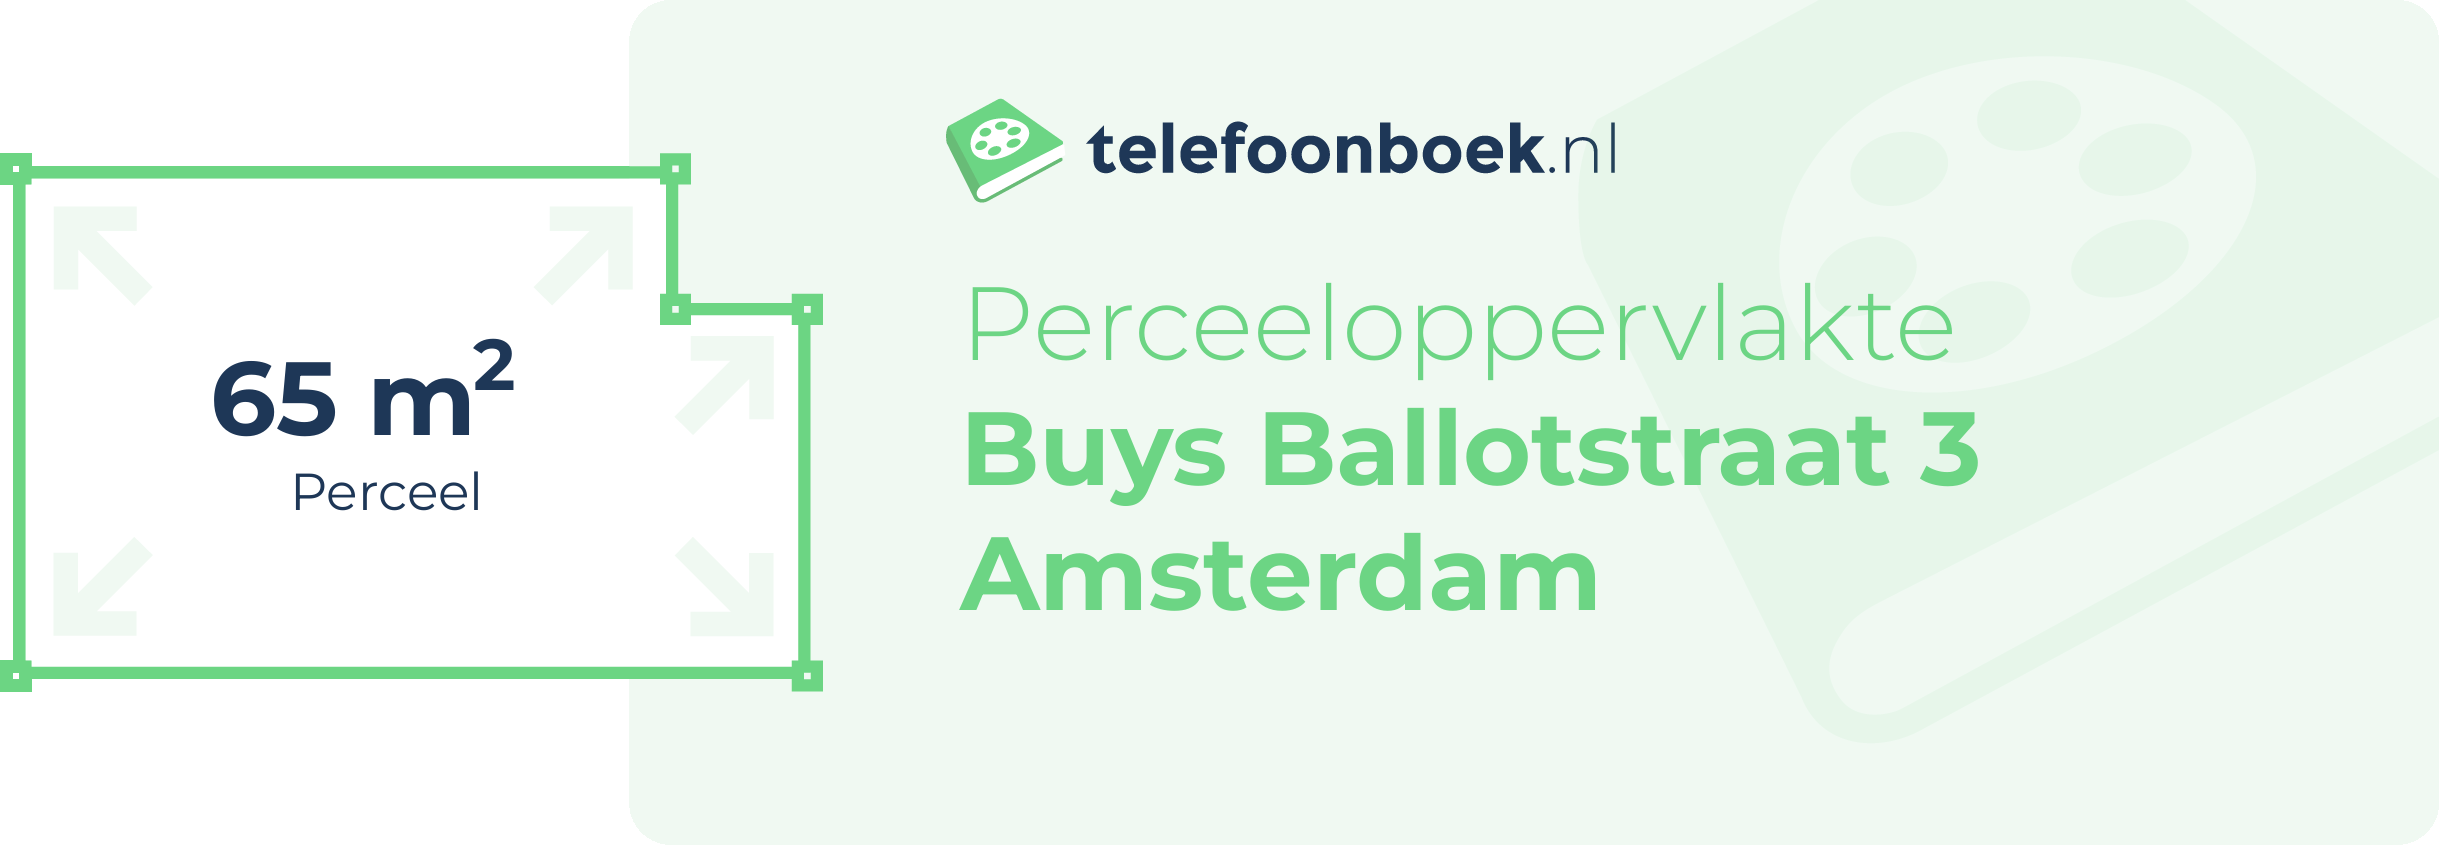 Perceeloppervlakte Buys Ballotstraat 3 Amsterdam